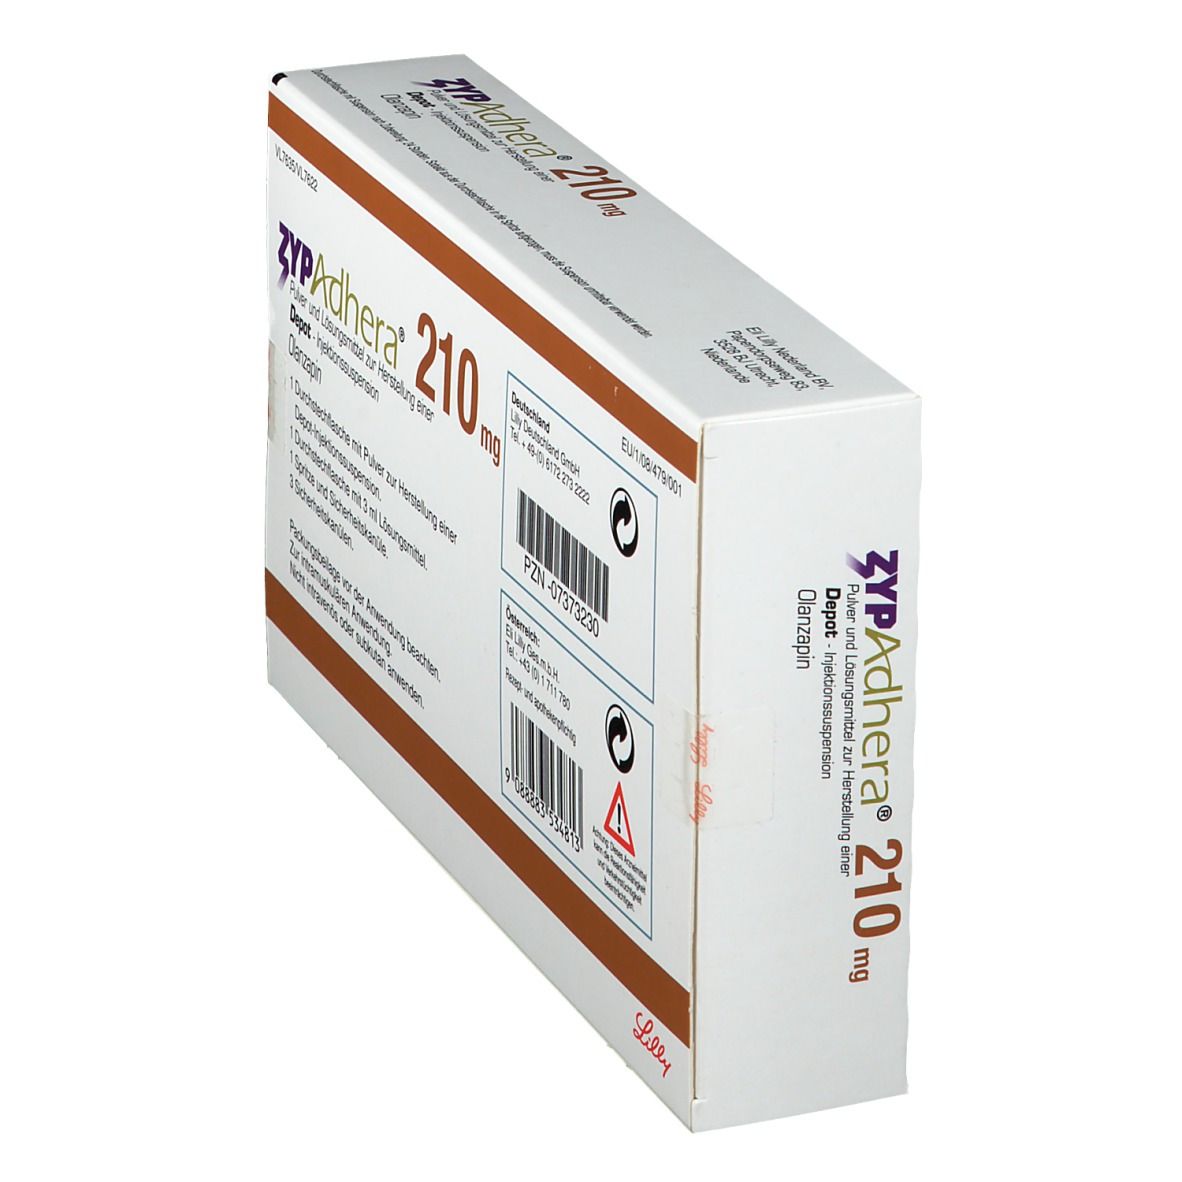 ZYPAdhera® 210 mg